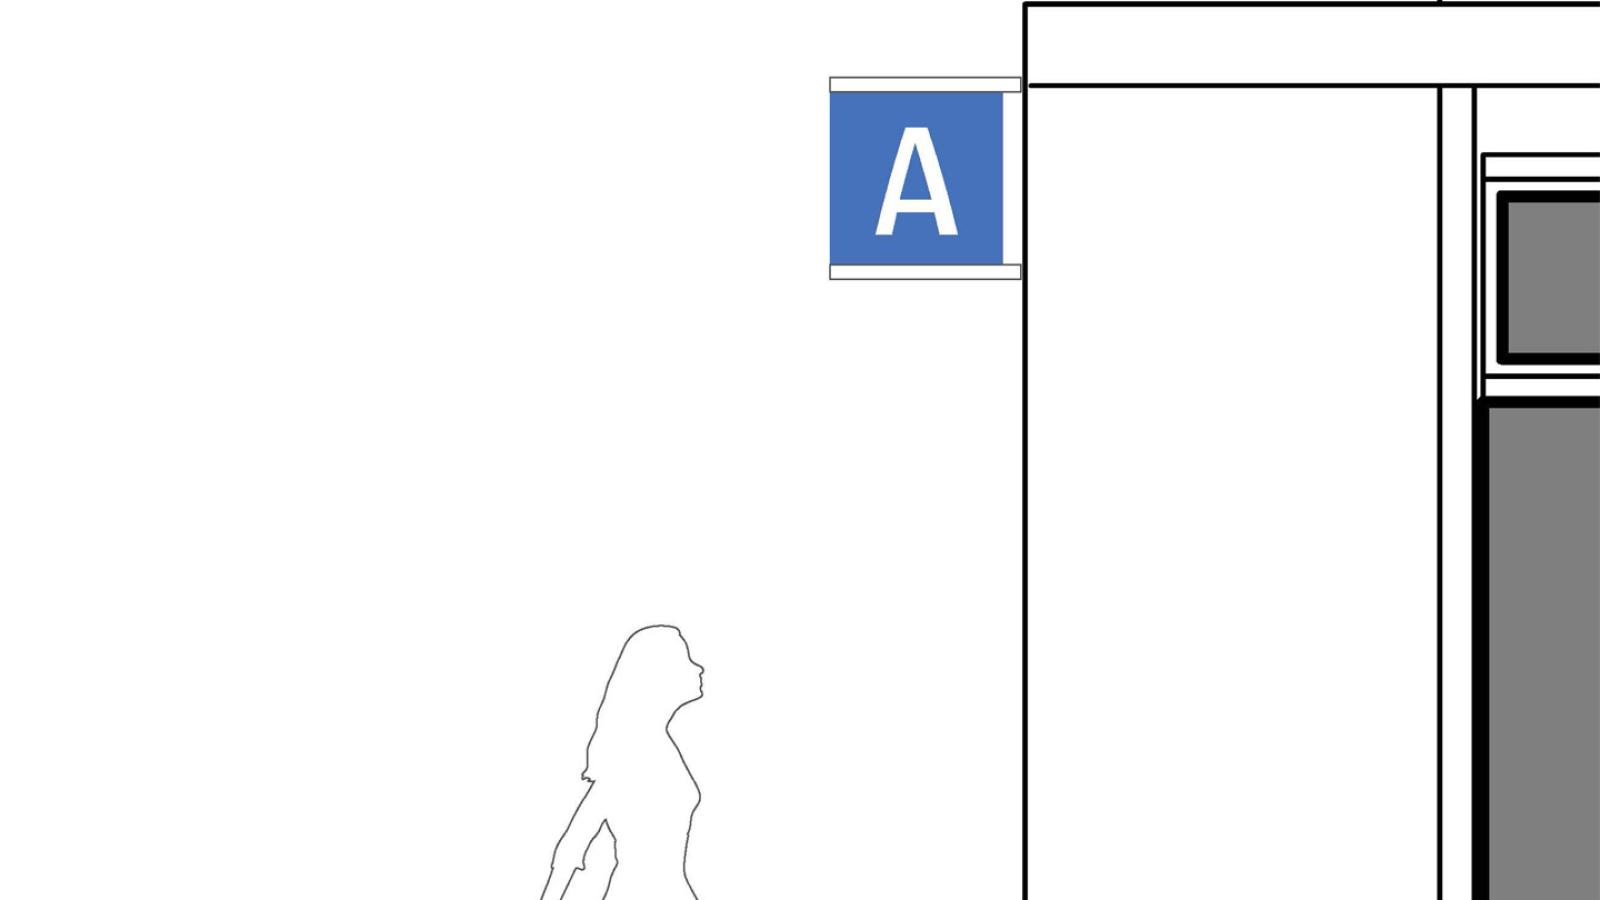 Ein Schild über dem Eingang zeigt ein "A". Die Silhouetten zweier Menschen macht die Proportionen und die Anbringhöhe des Schildes erkennbar.